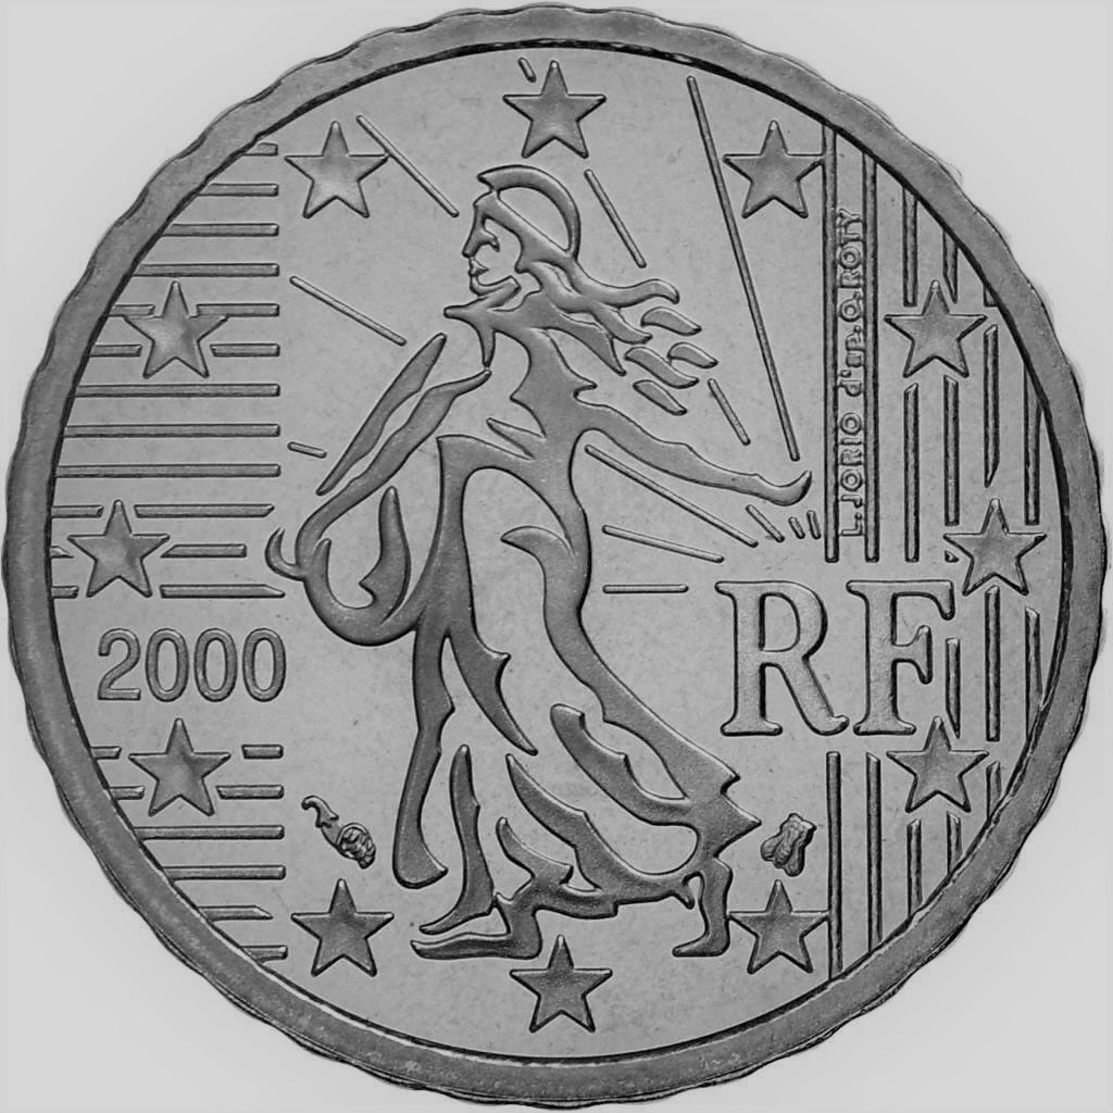 MONNAIE 10 CENTIMES FRANCE 2000 Euro Fautée COULEUR ACIER - Variétés Et Curiosités